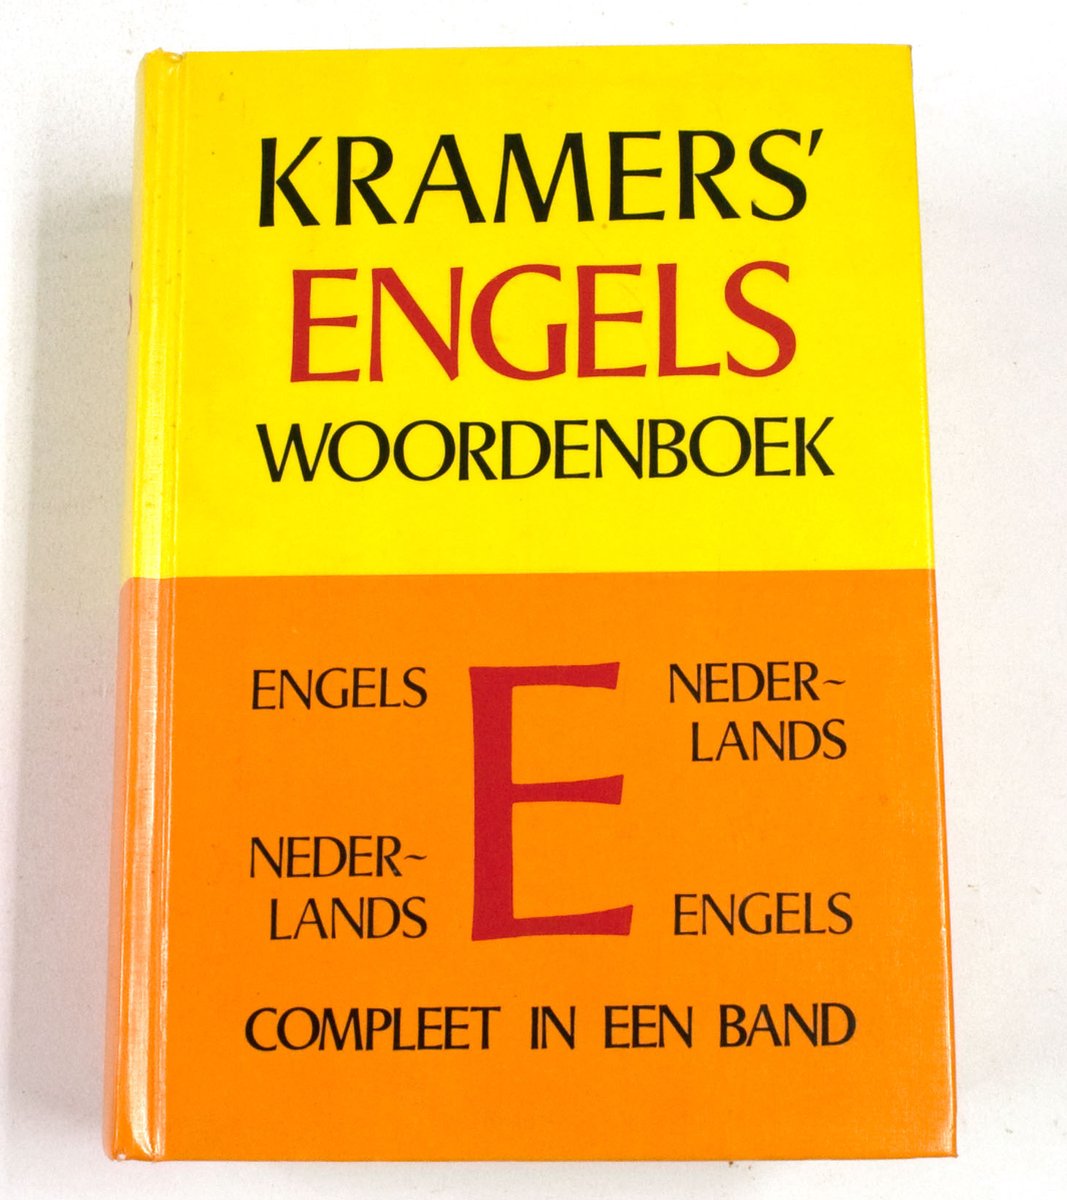 Kramers Engels Woordenboek